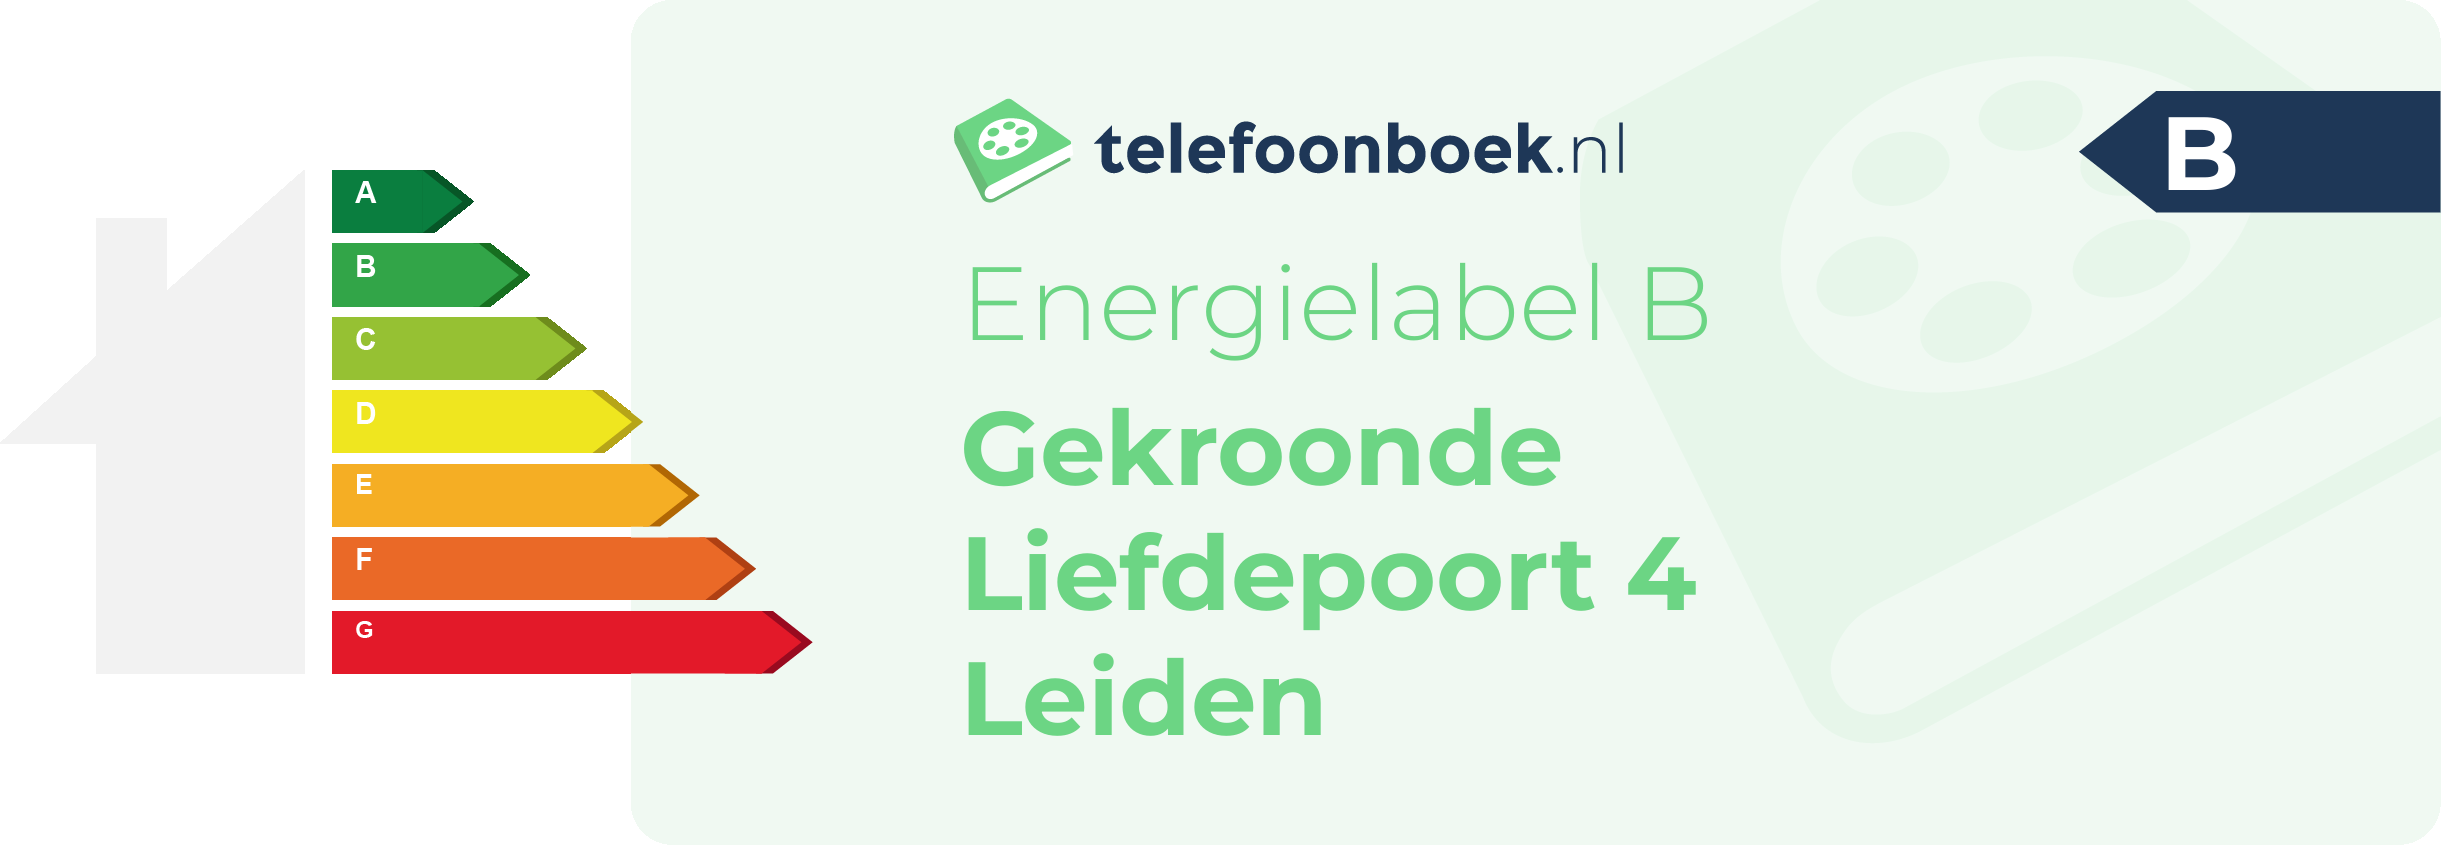 Energielabel Gekroonde Liefdepoort 4 Leiden